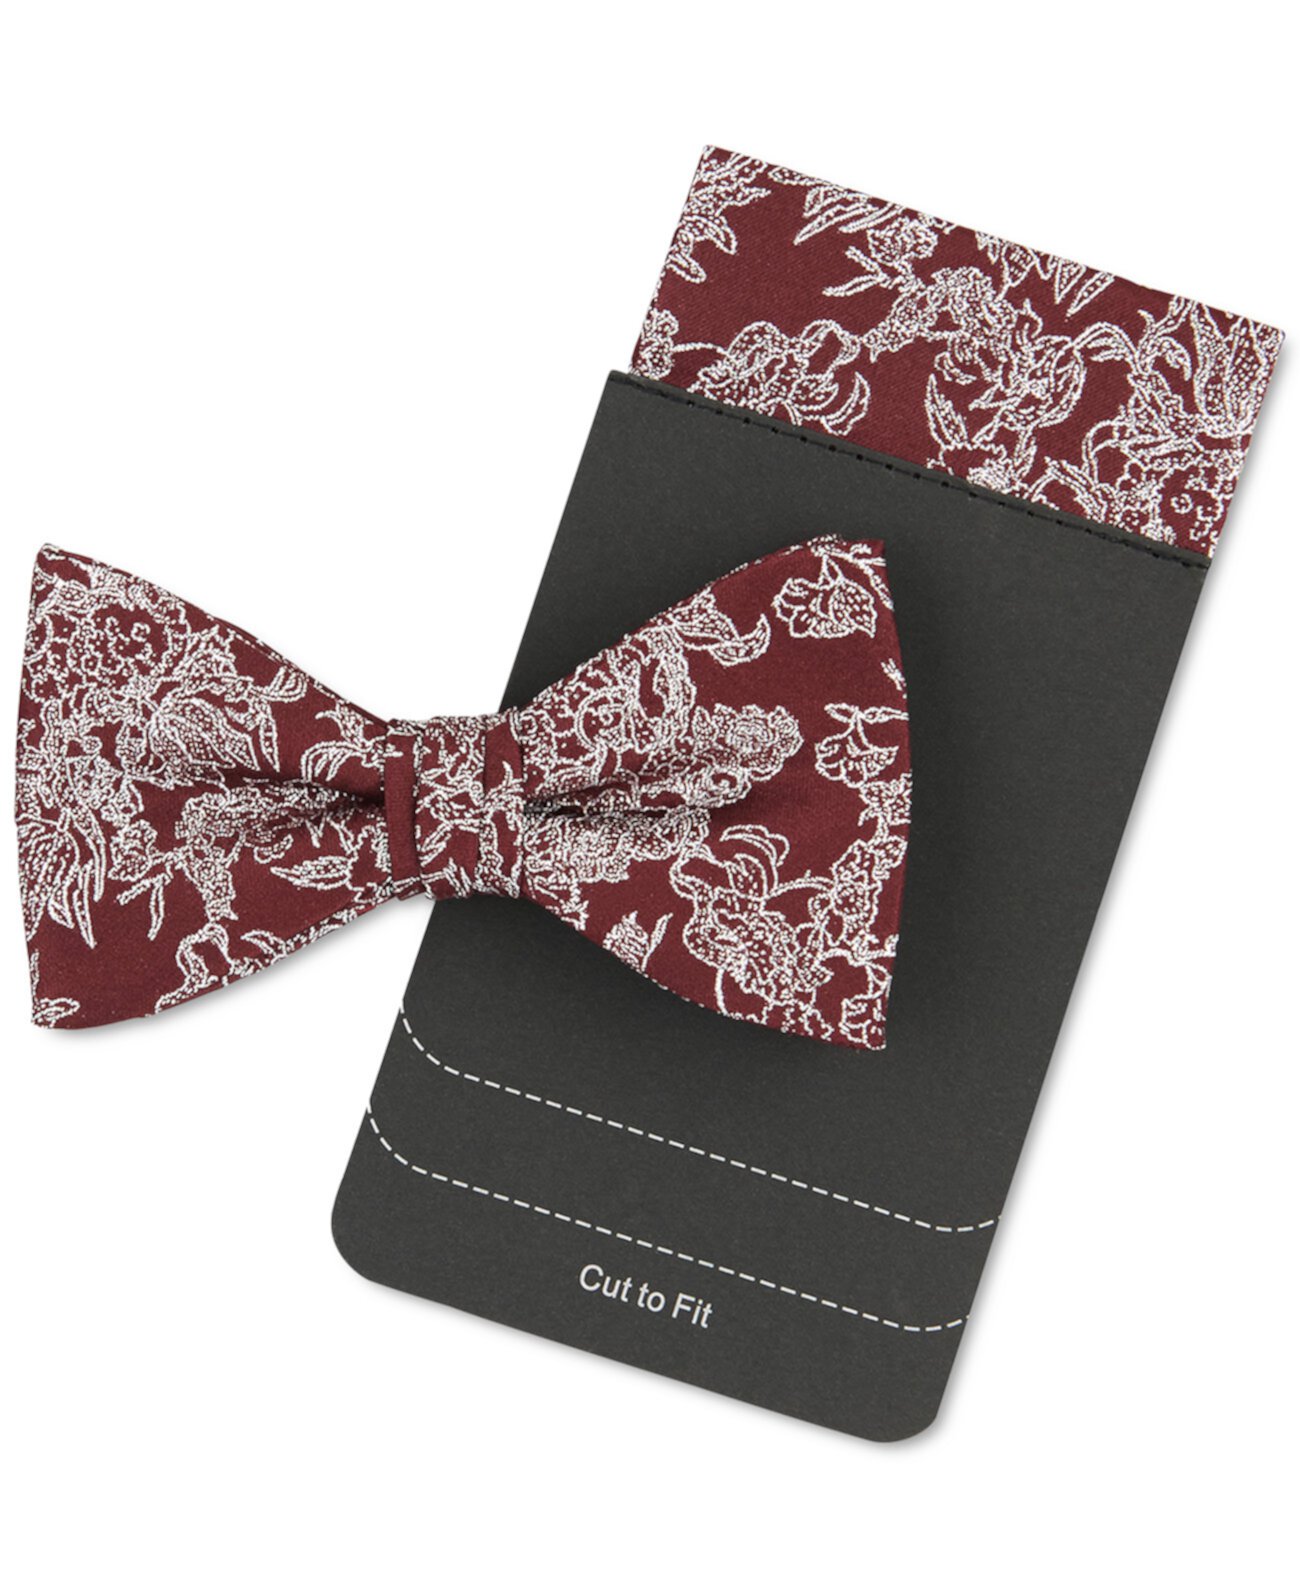 Мужской комплект галстука-бабочки и нагрудного платка с цветочным принтом Tallia